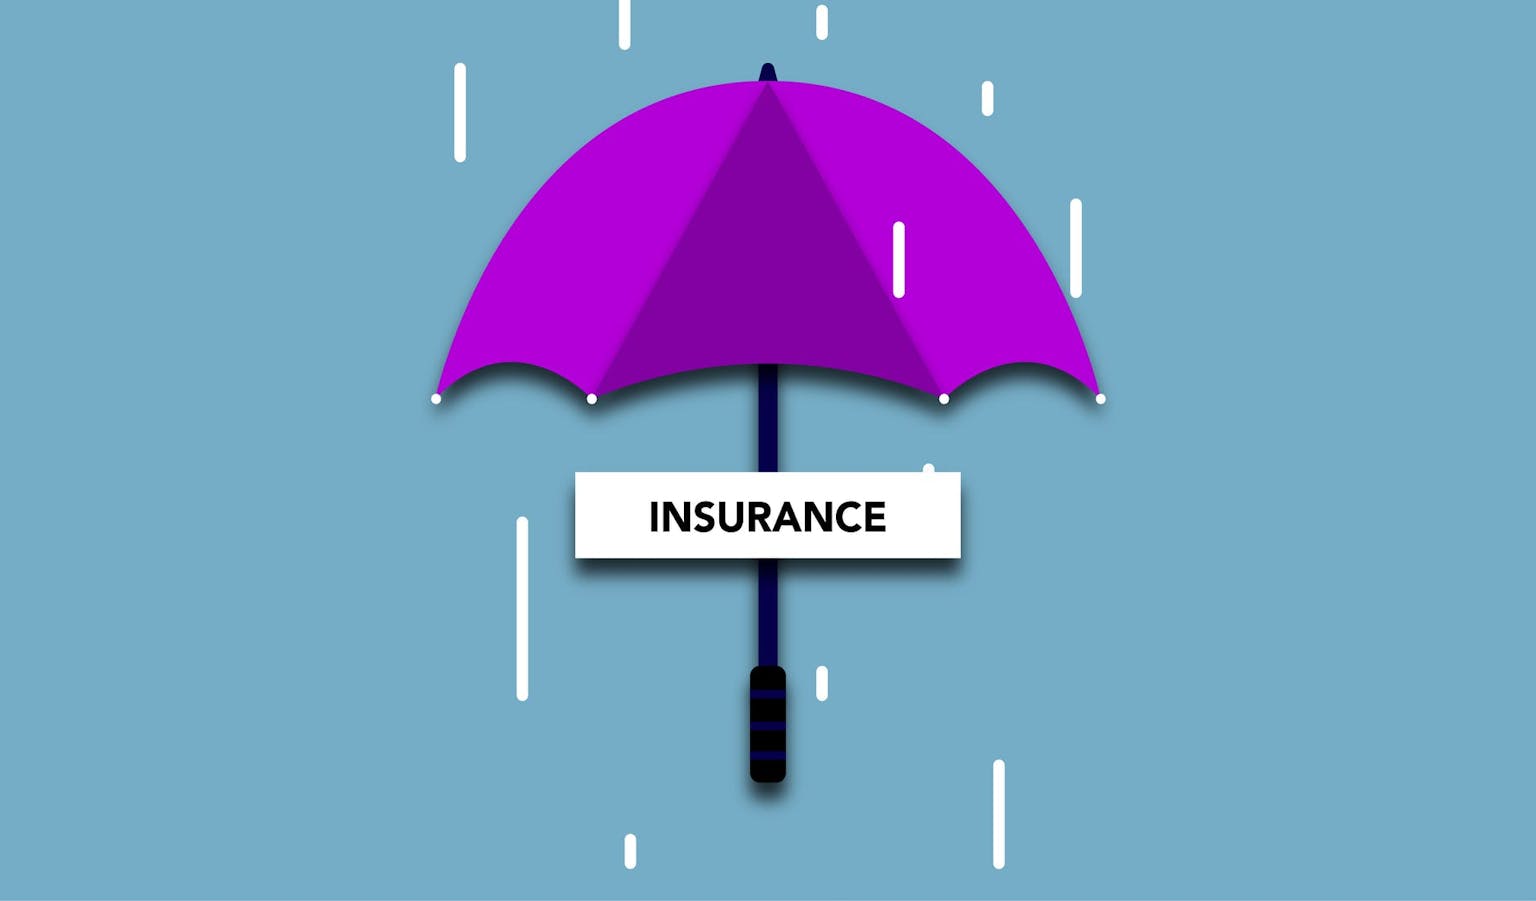 Cara Beli Asuransi Mending Lewat Agen, Broker, atau Online?